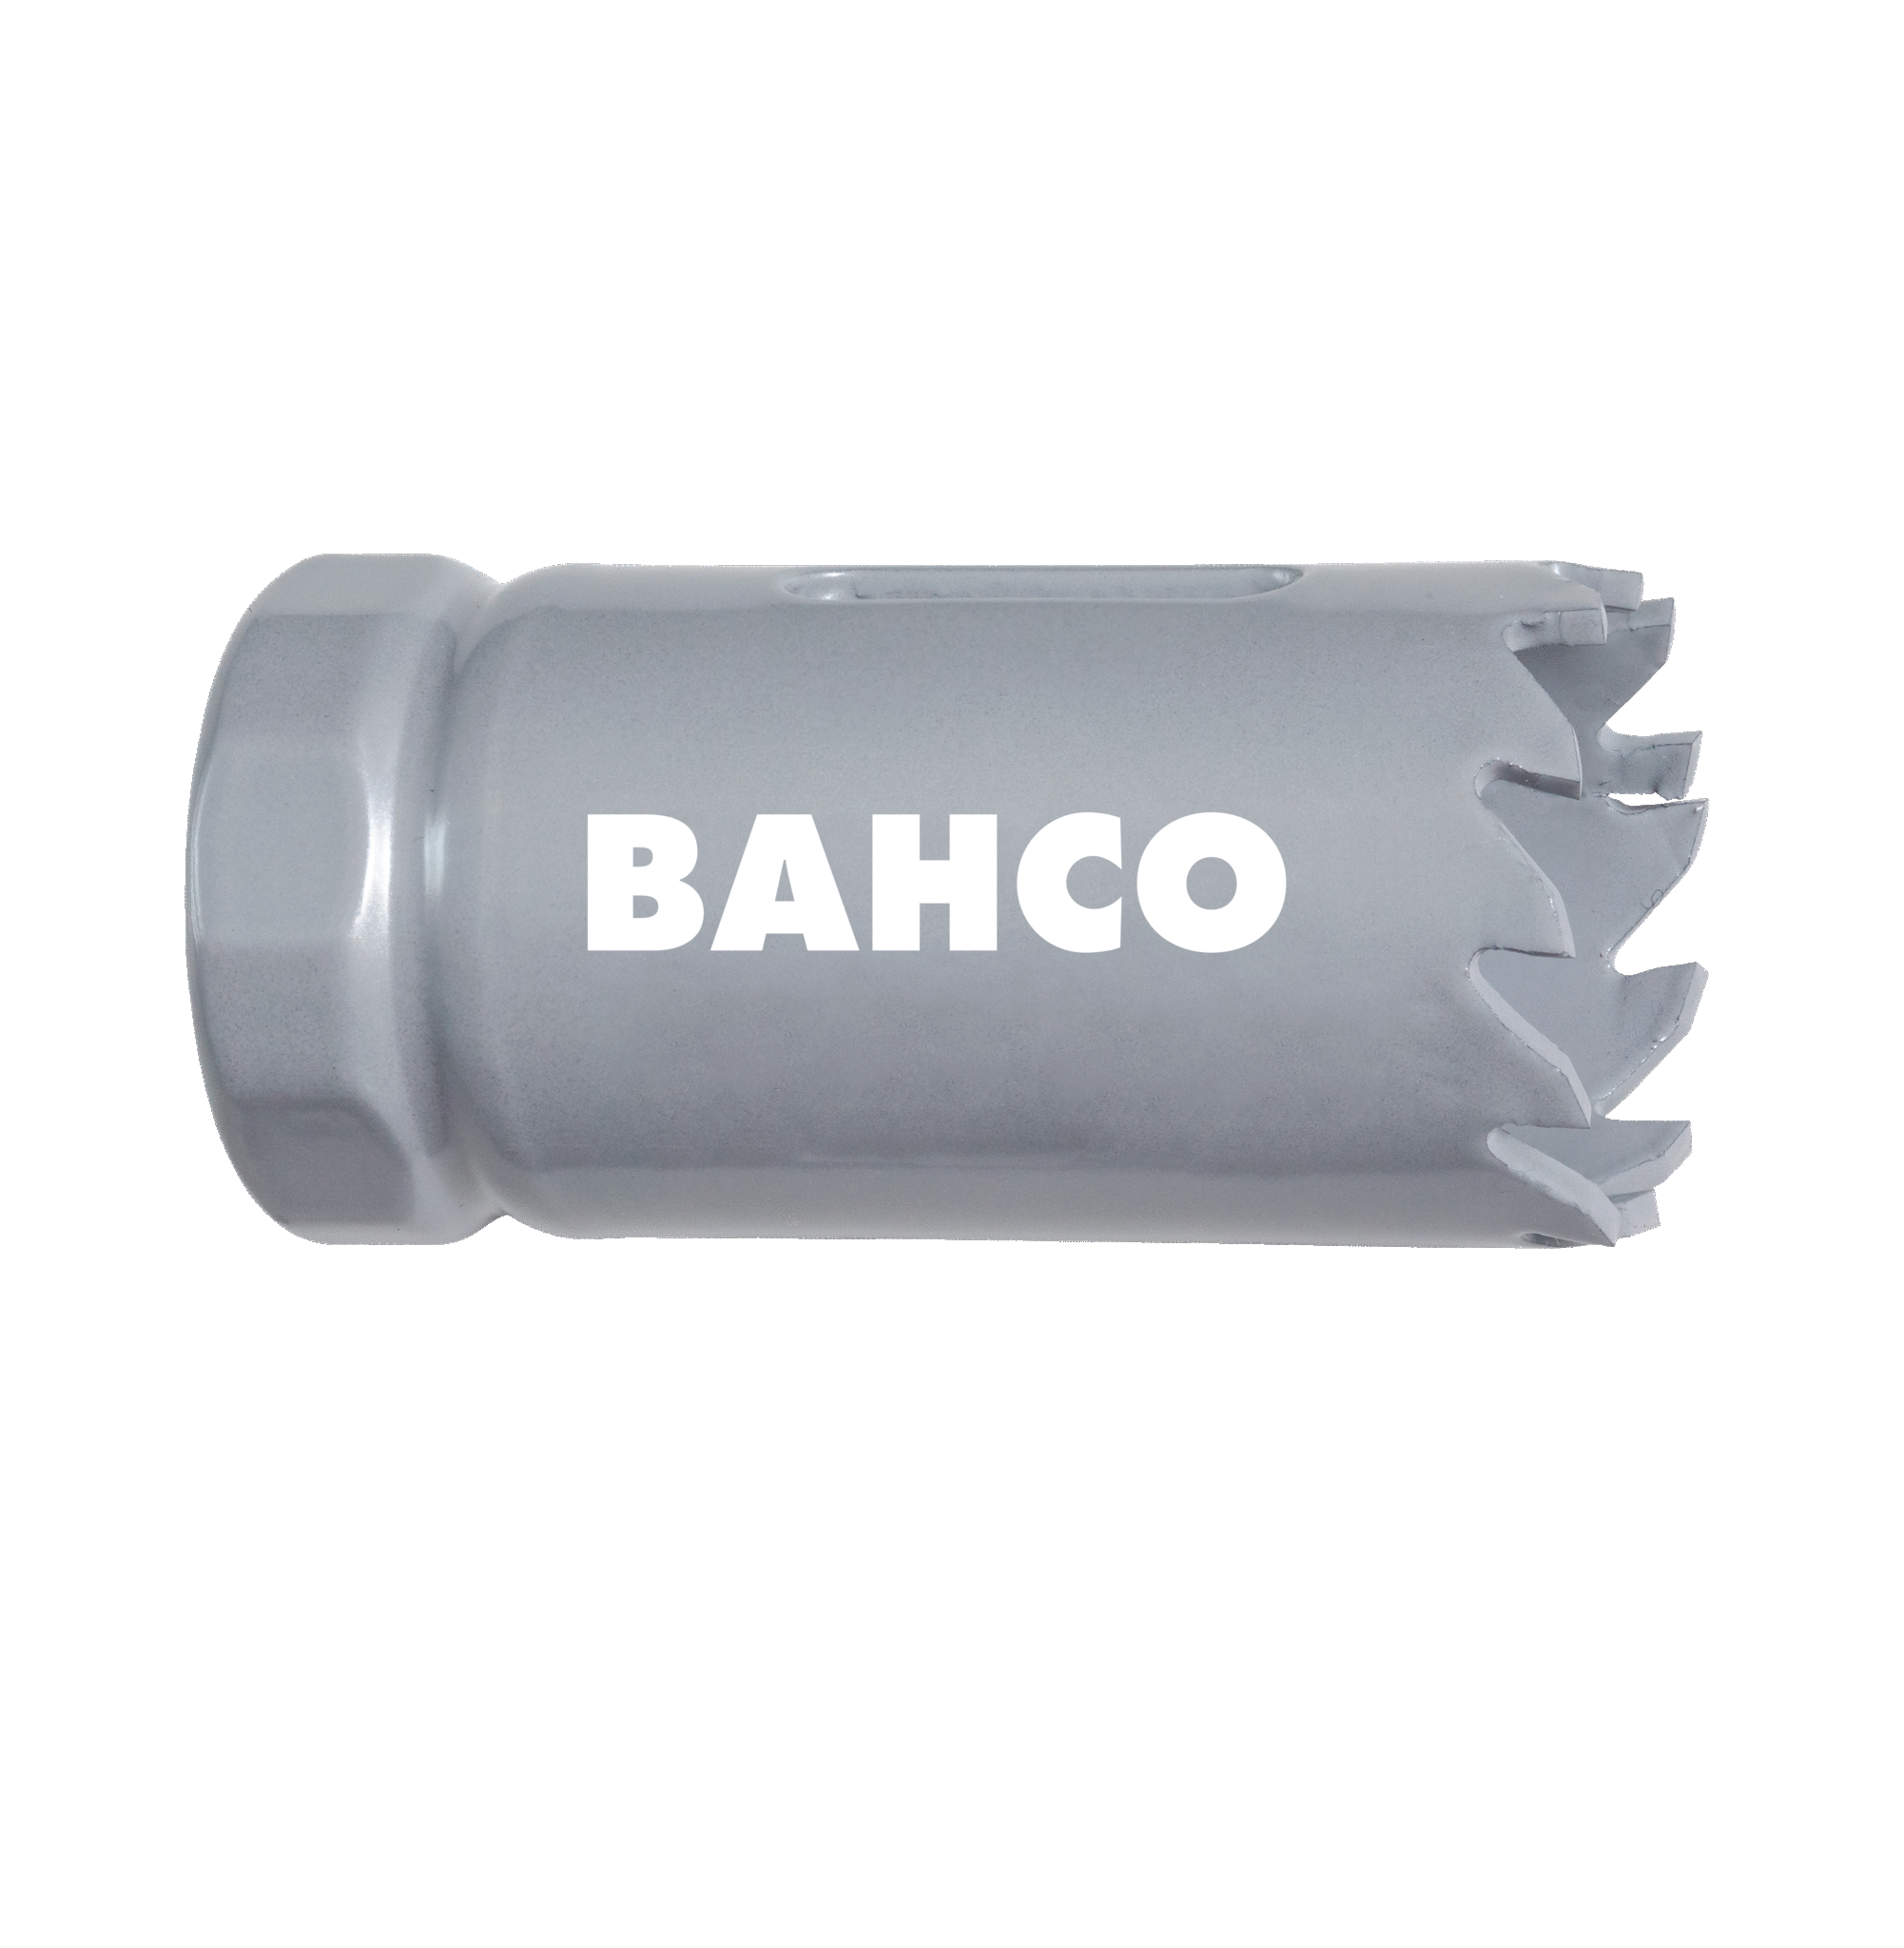 Кольцевые пилы с твердосплавными напайками BAHCO 3832-65